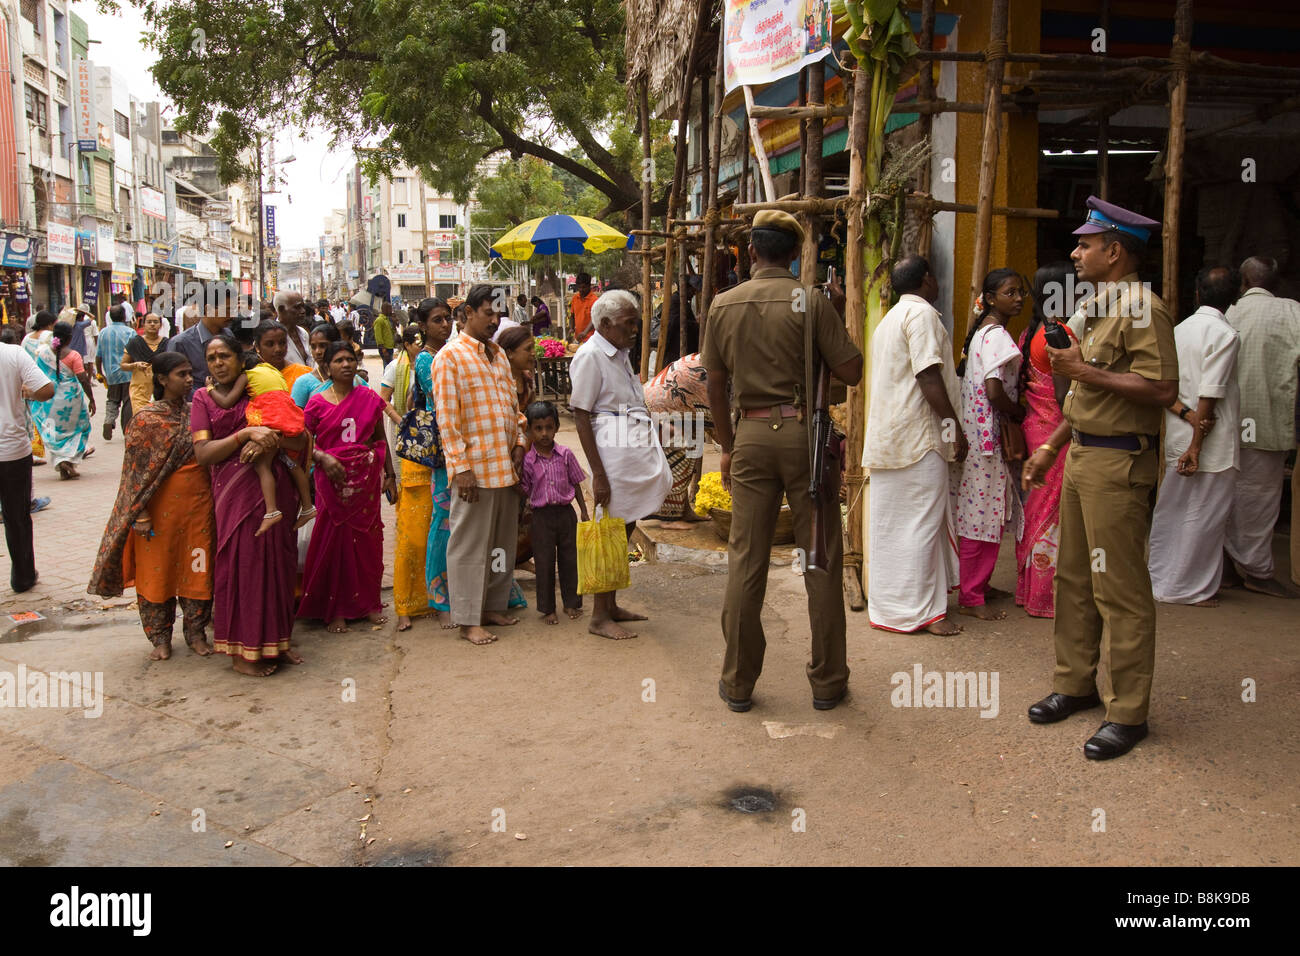 India Tamil Nadu Madurai Pongal Harvest Festival hindu pilgrims queueing to enter temple Stock Photo